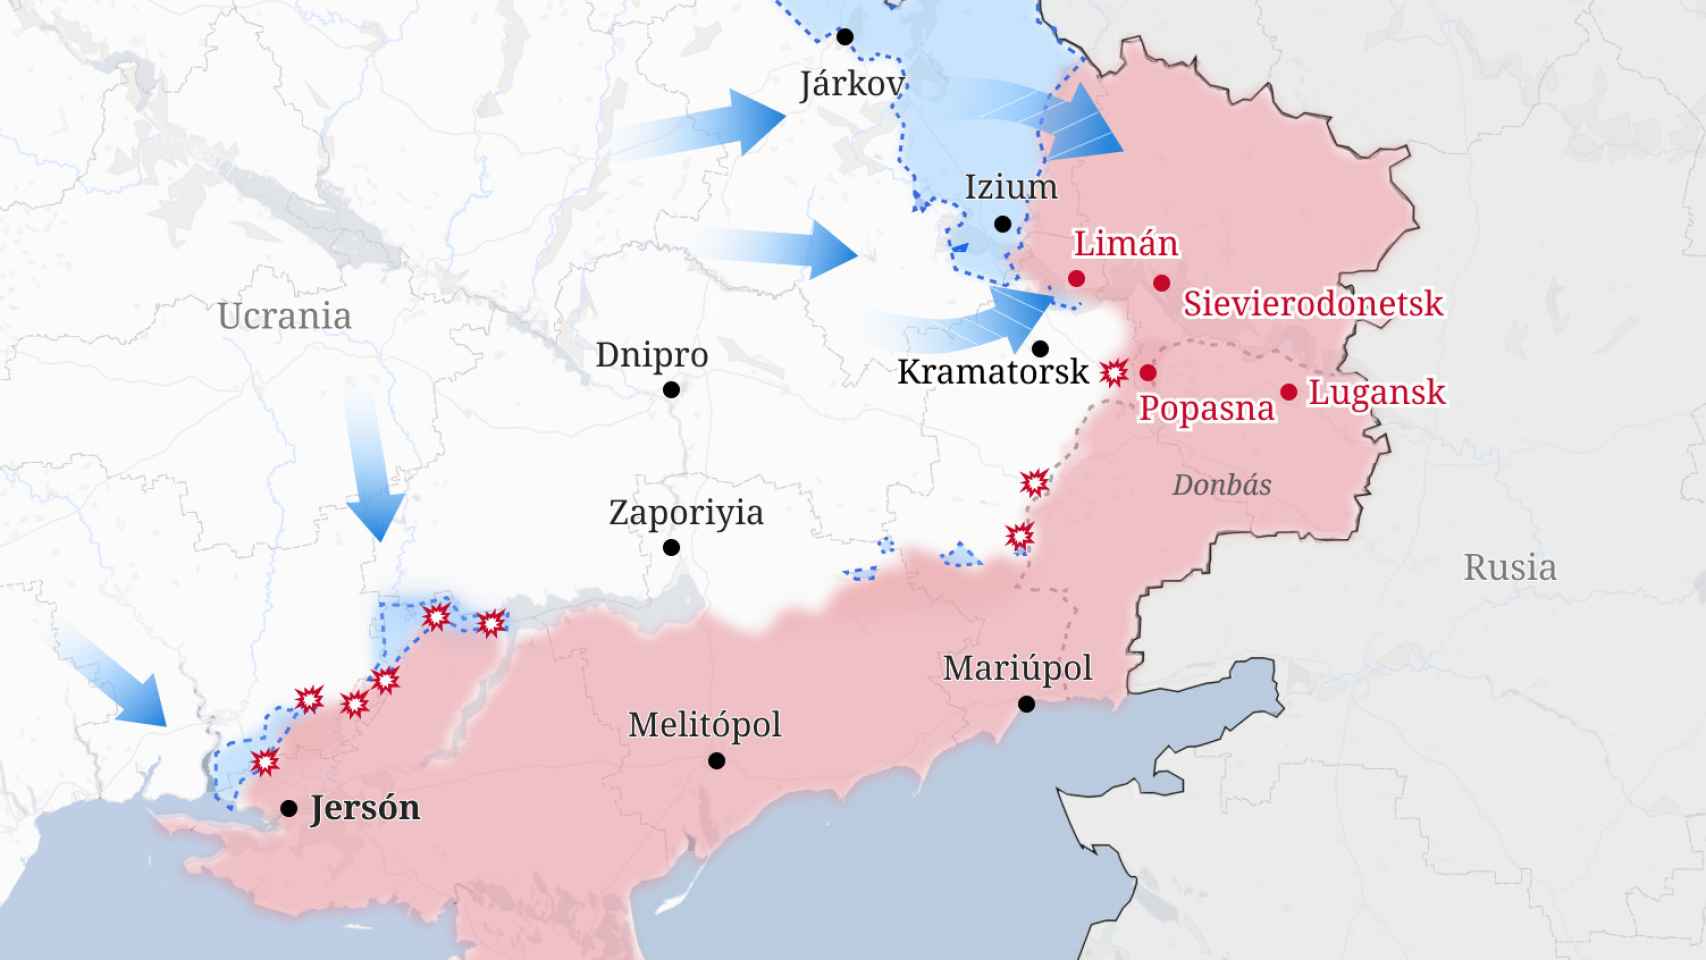 Actualización del mapa de Ucrania a 11 de septiembre. Fuente: ISW, Ministerio de Defensa de Reino Unido, elaboración propia